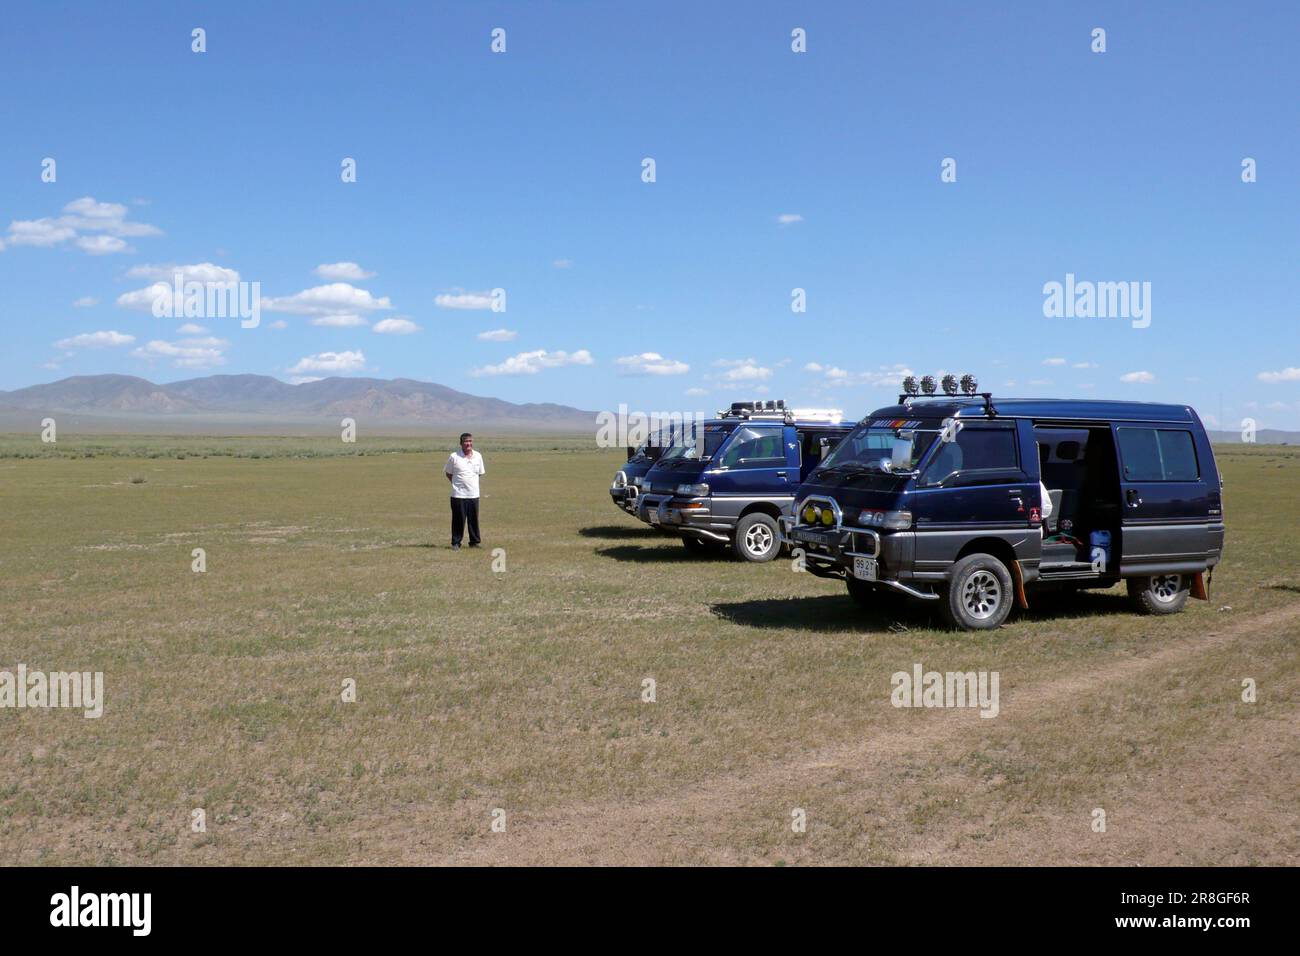 Minivan For Tourists, Mongolia Stock Photo